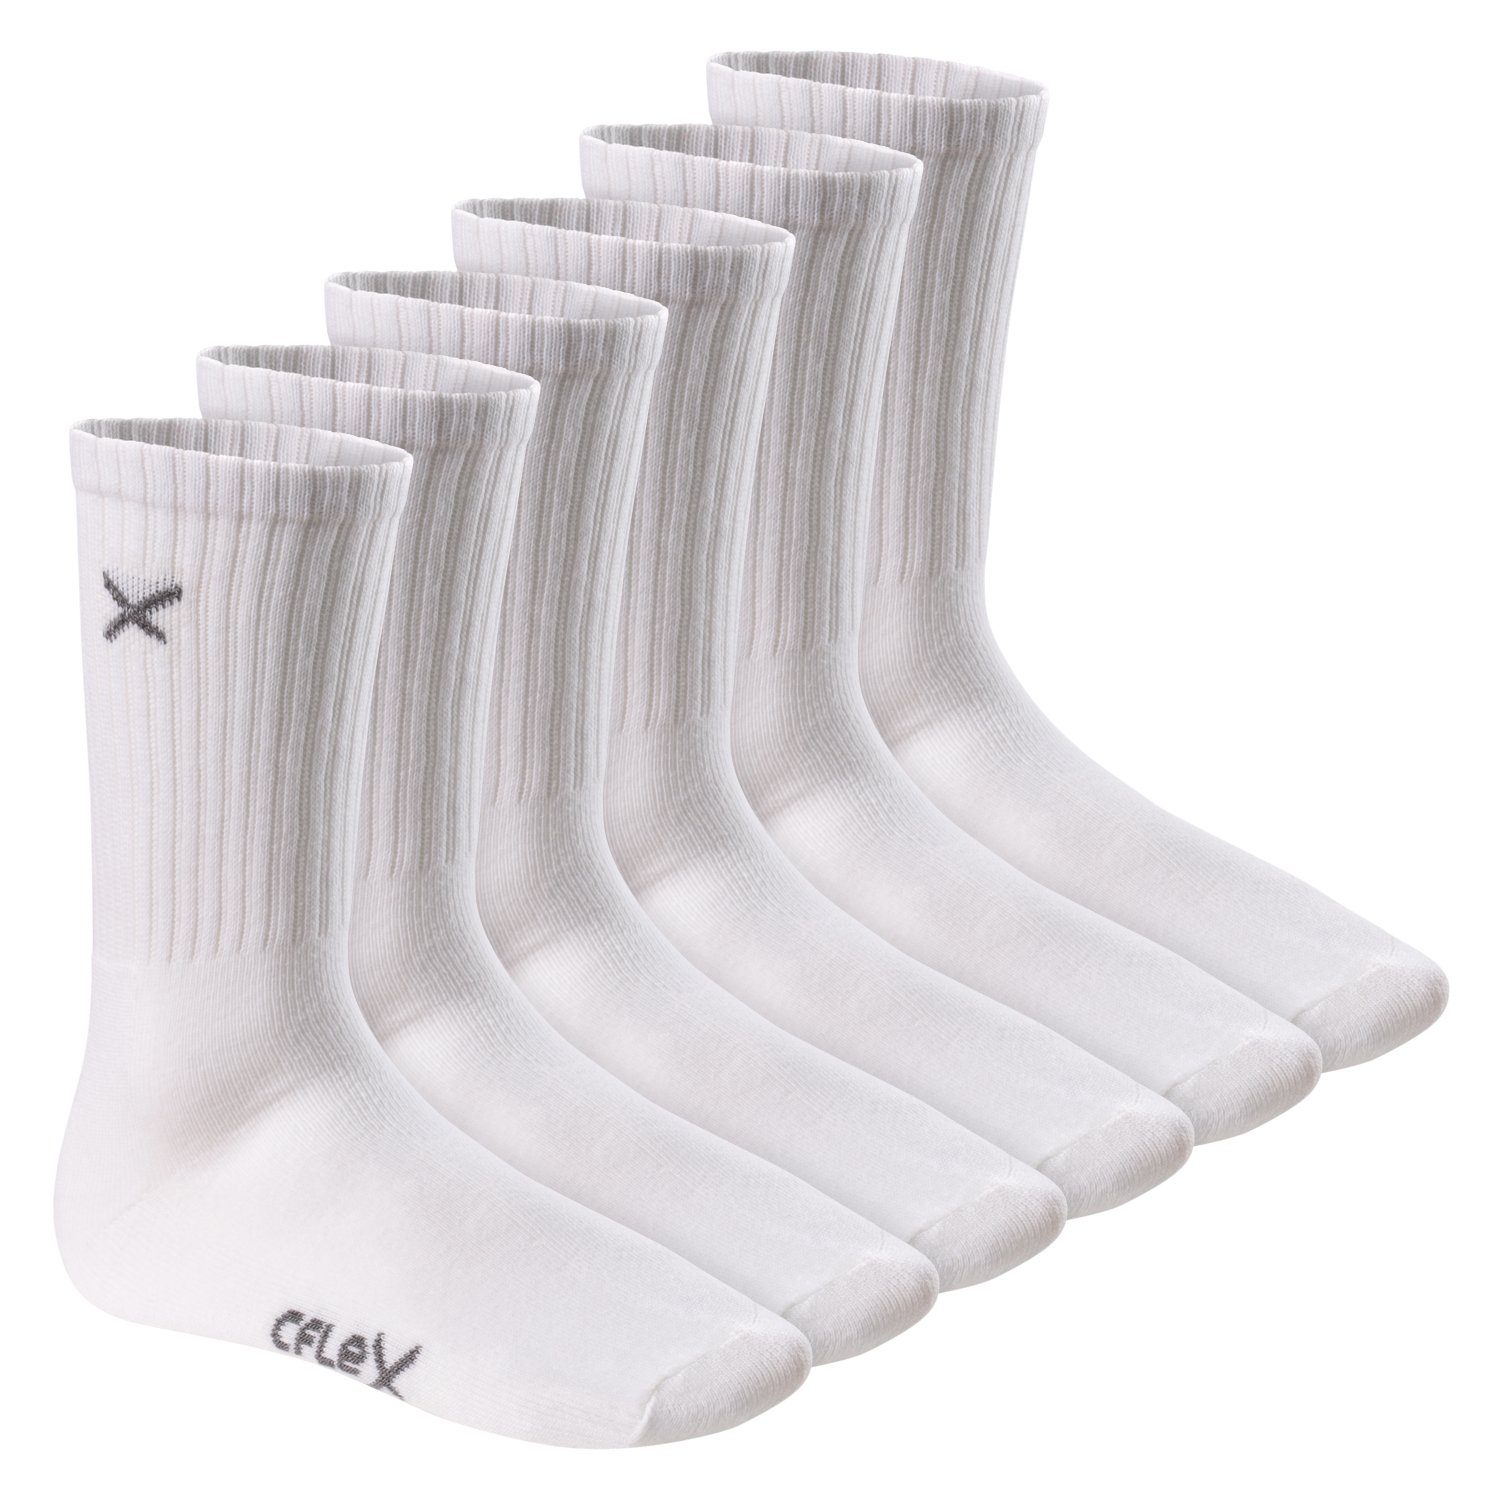 Socks CFLEX Lifestyle Frotteesohle Sportsocken Herren Crew & mit Damen Paar) (6 White für